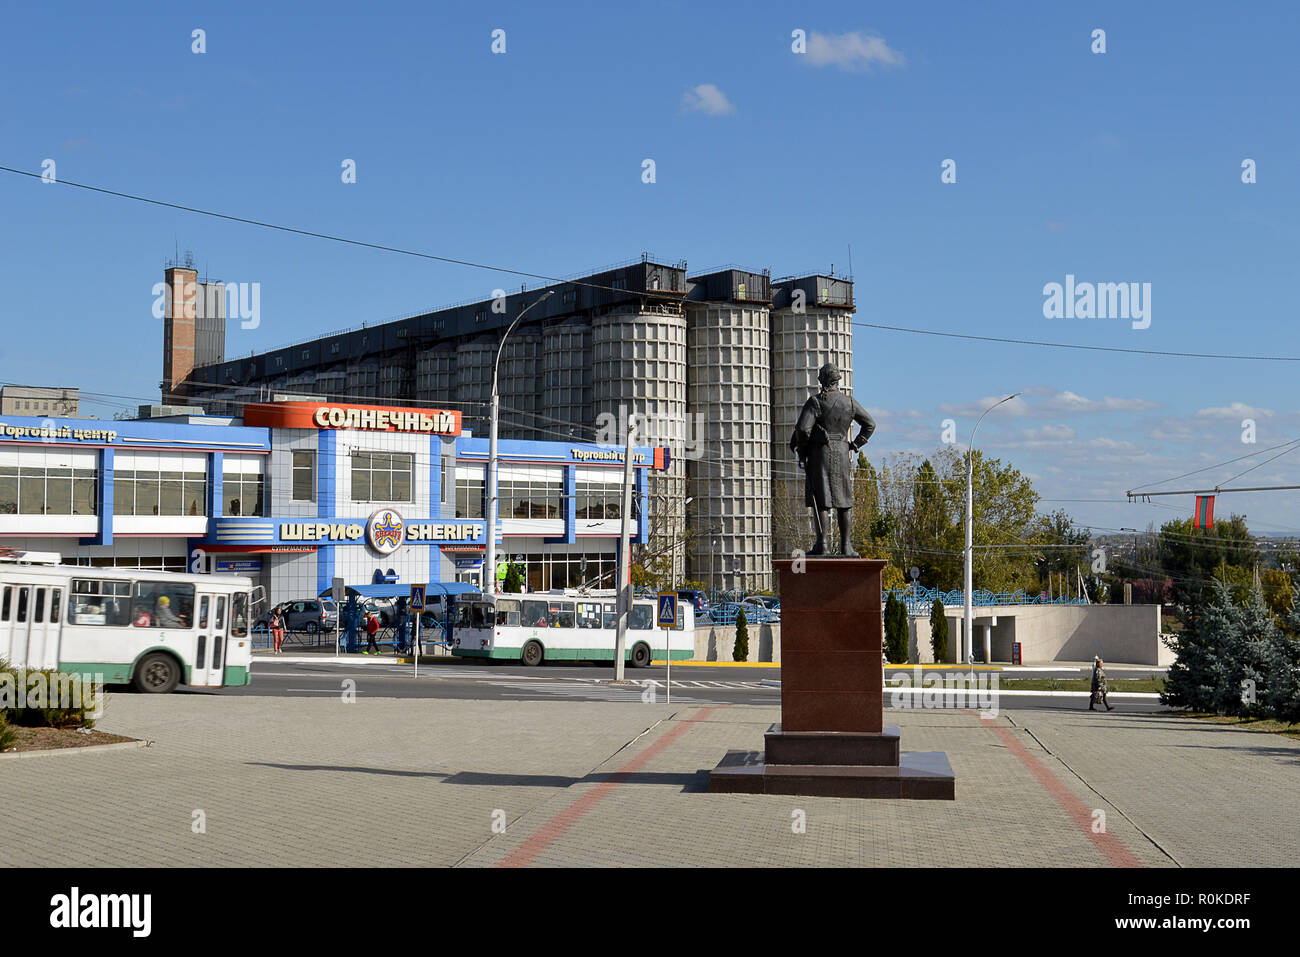 BENDER, Moldau/Transnistrien - 7. OKTOBER 2018: die Statue von Grigorij Potemkin, der Eroberer von Benderfor des Russischen Reiches durch die Osmanen gehalten Stockfoto